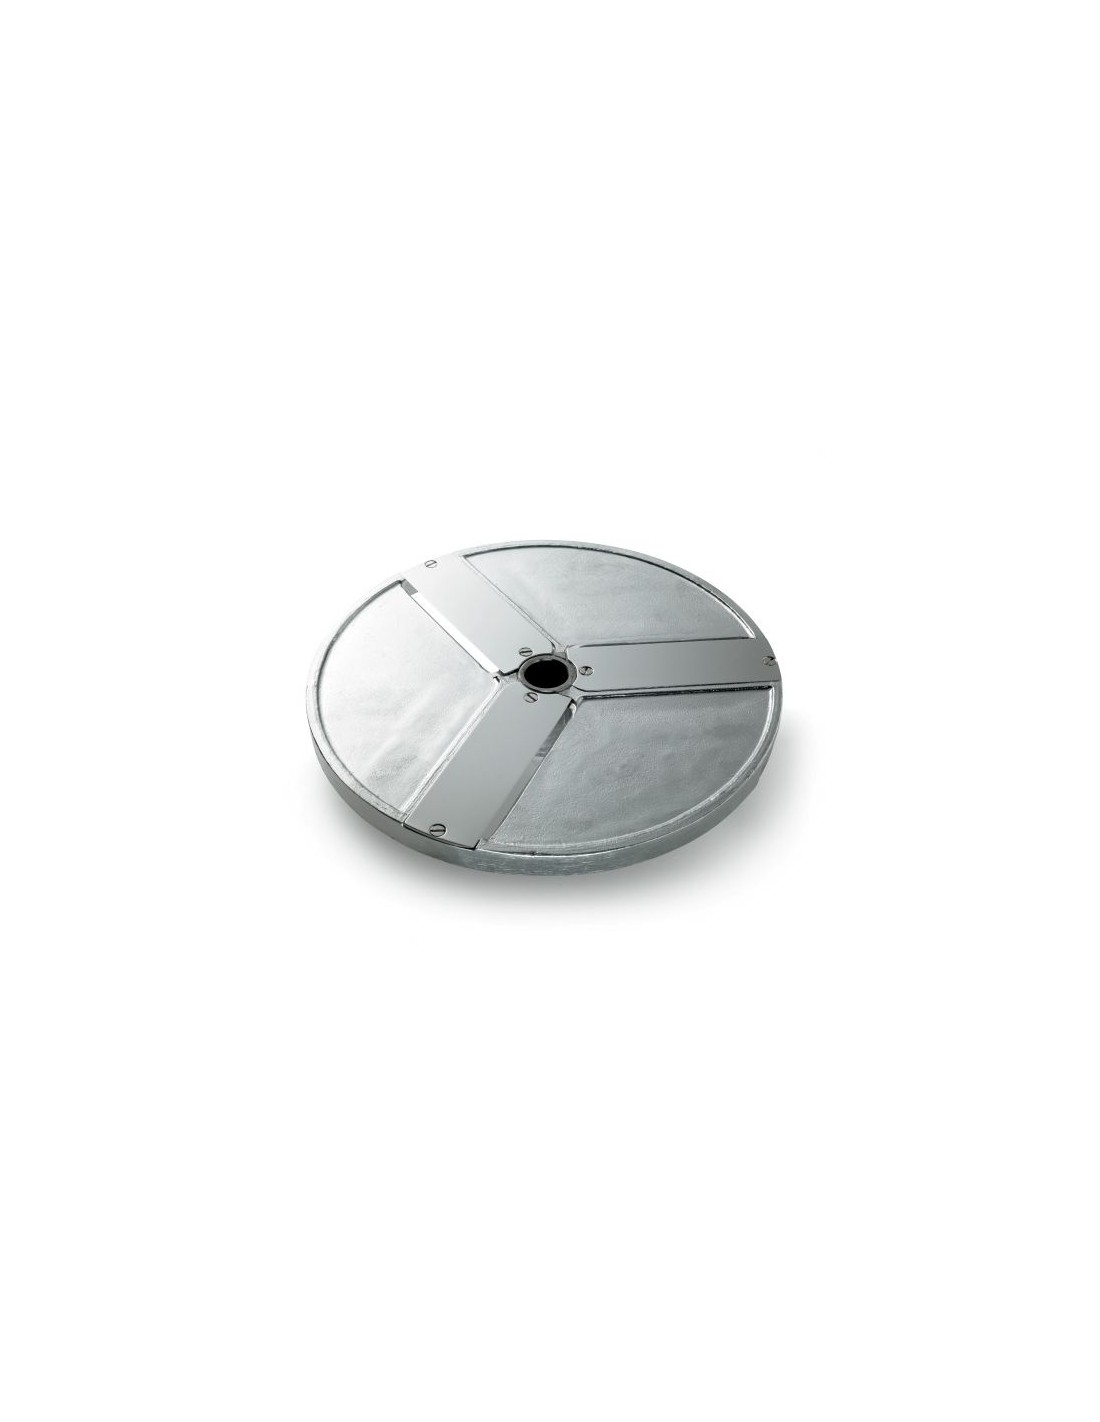 Disco per fette - Diametro mm 205 - Spessore taglio mm 60